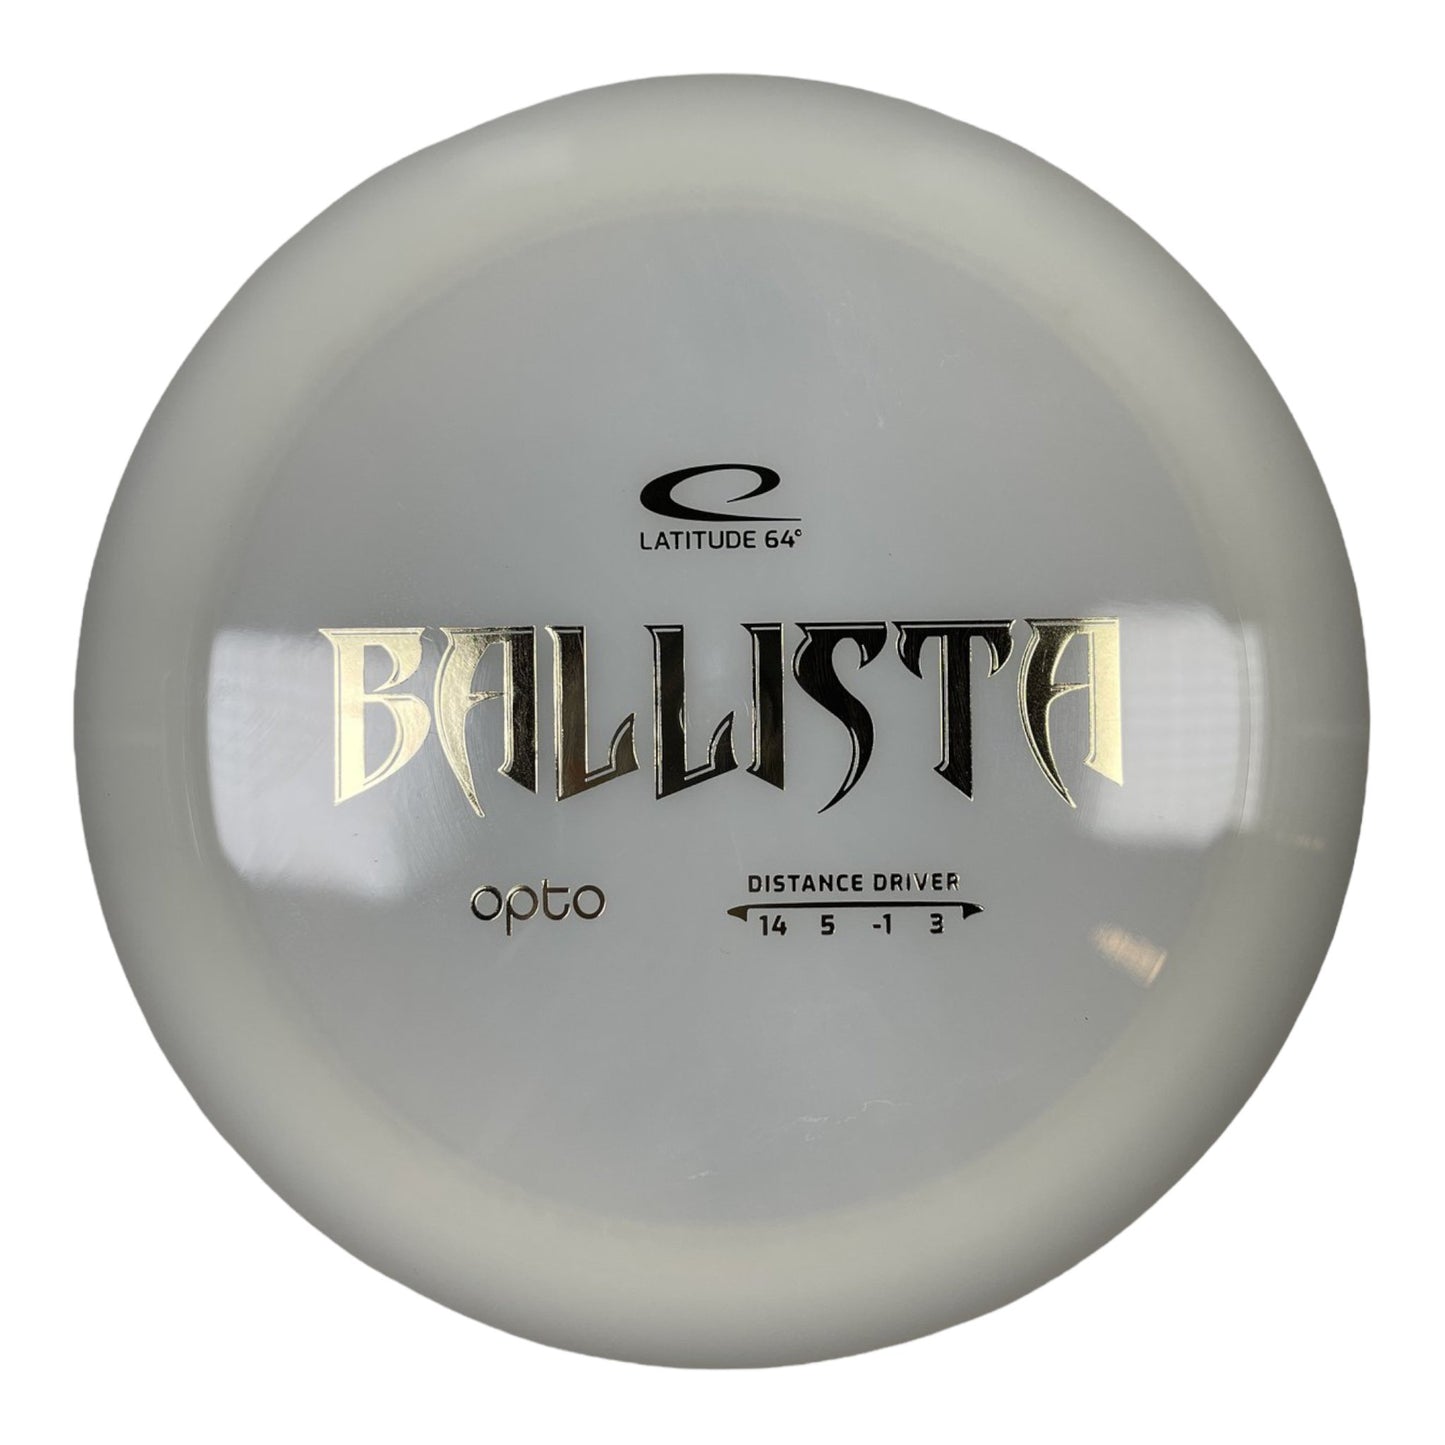 Latitude 64 Ballista | Opto | White/Gold 171g Disc Golf